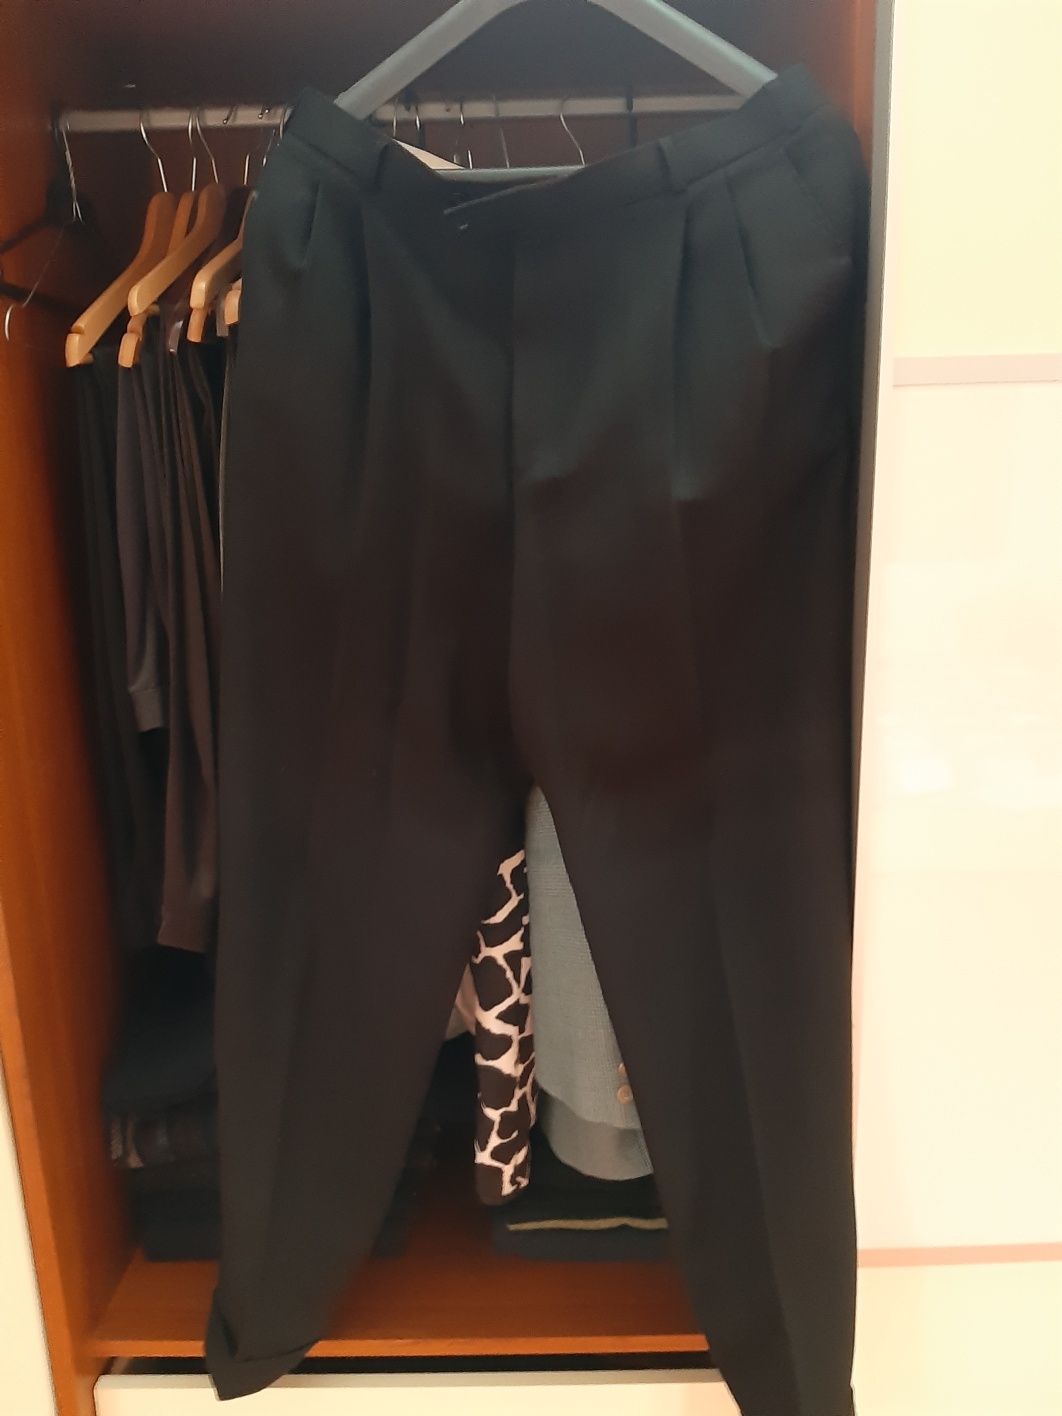 Spodnie męskie czarne klasyczne z Inter mody xl Xxl PRL vintage klasyk